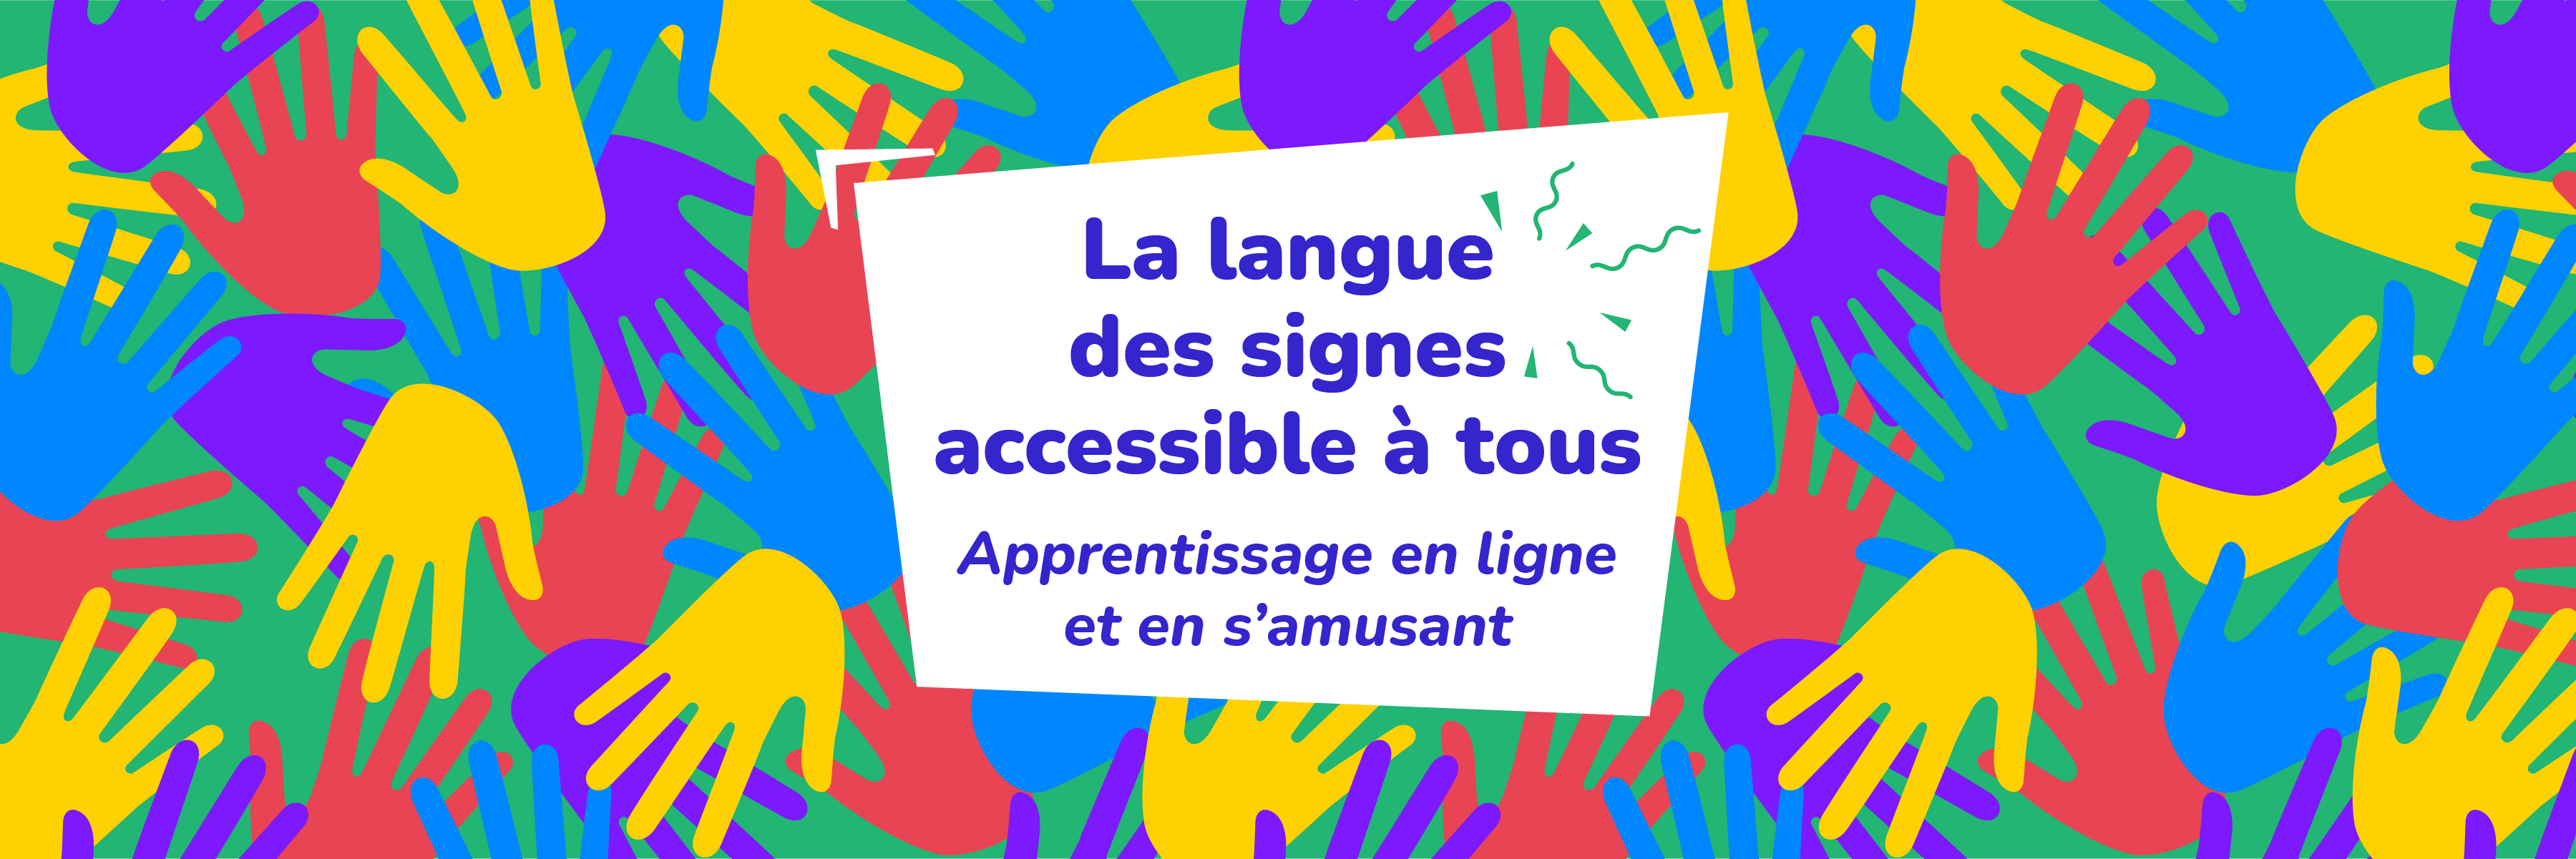 Bandeau Orange où est inscrit : Hello et bienvenue sur SignerzLa plateforme qui vous apprend la langue des signes en vous amusant ! Image d